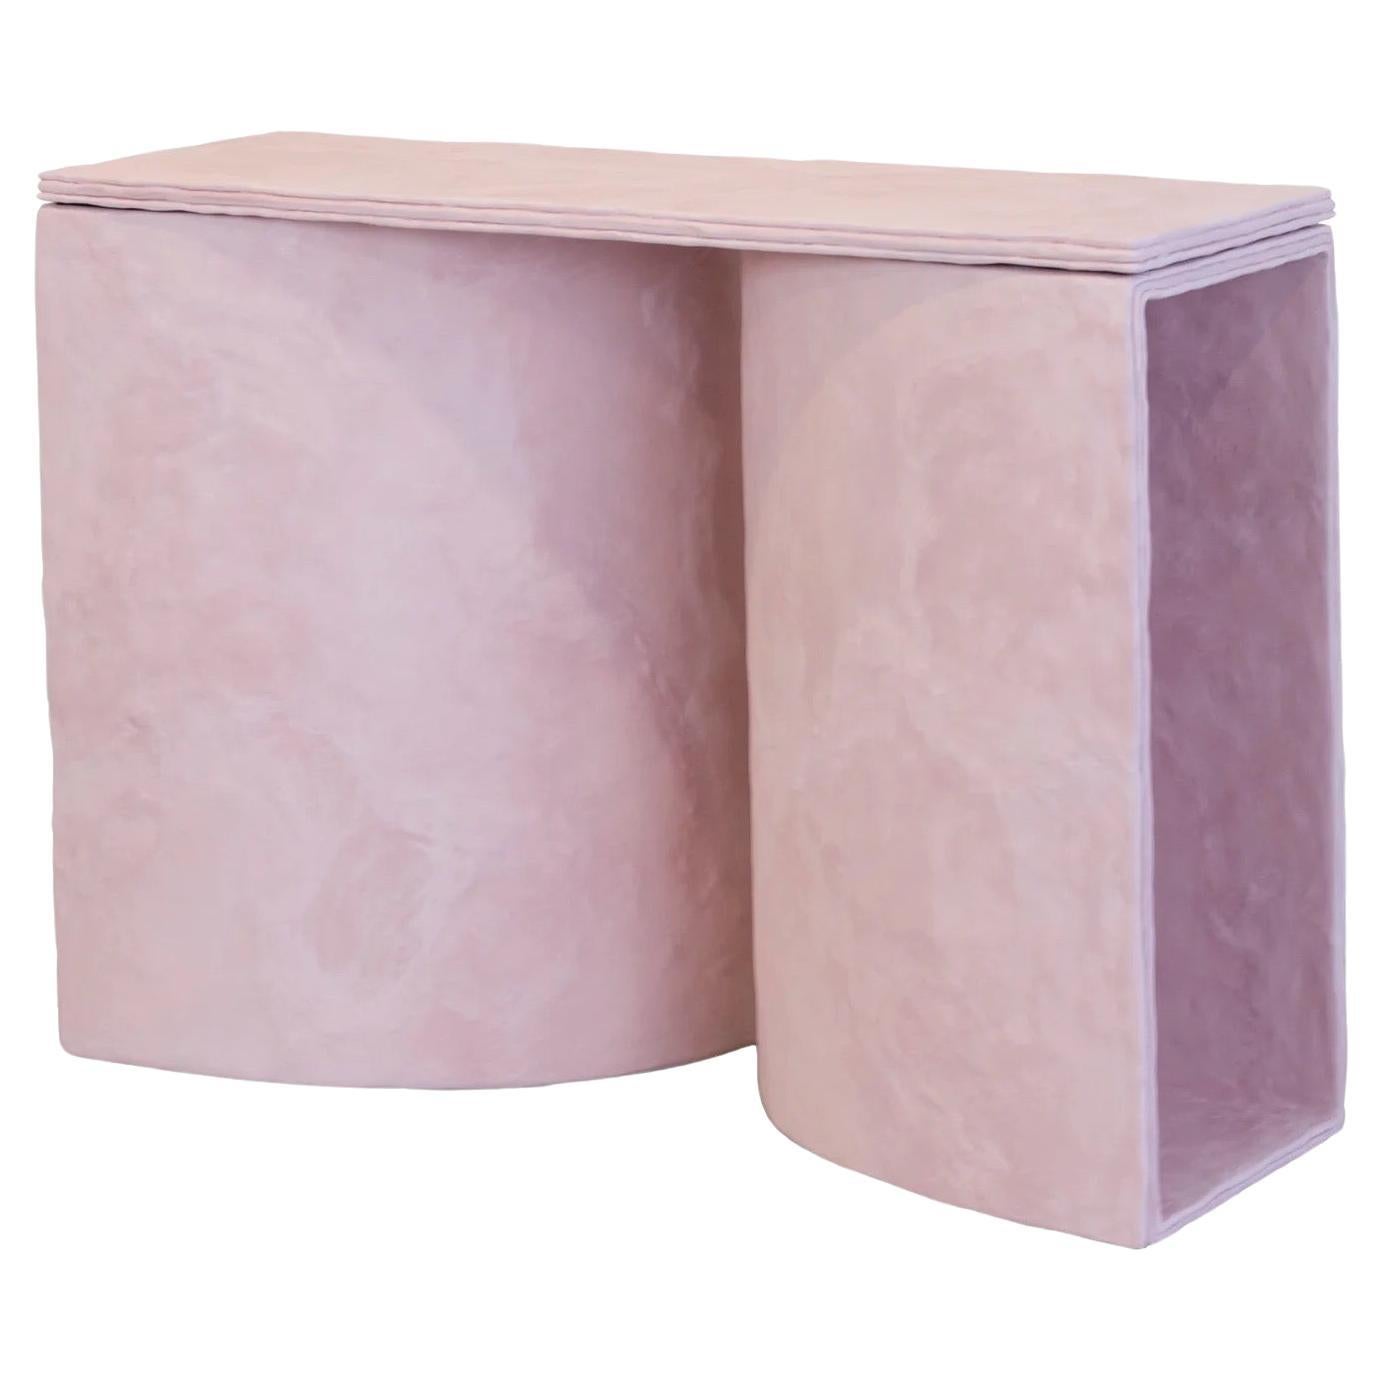 PLANE Konsolen-/Konsolentisch aus rosa Zement von Bailey Fontaine REPby Tuleste Factory